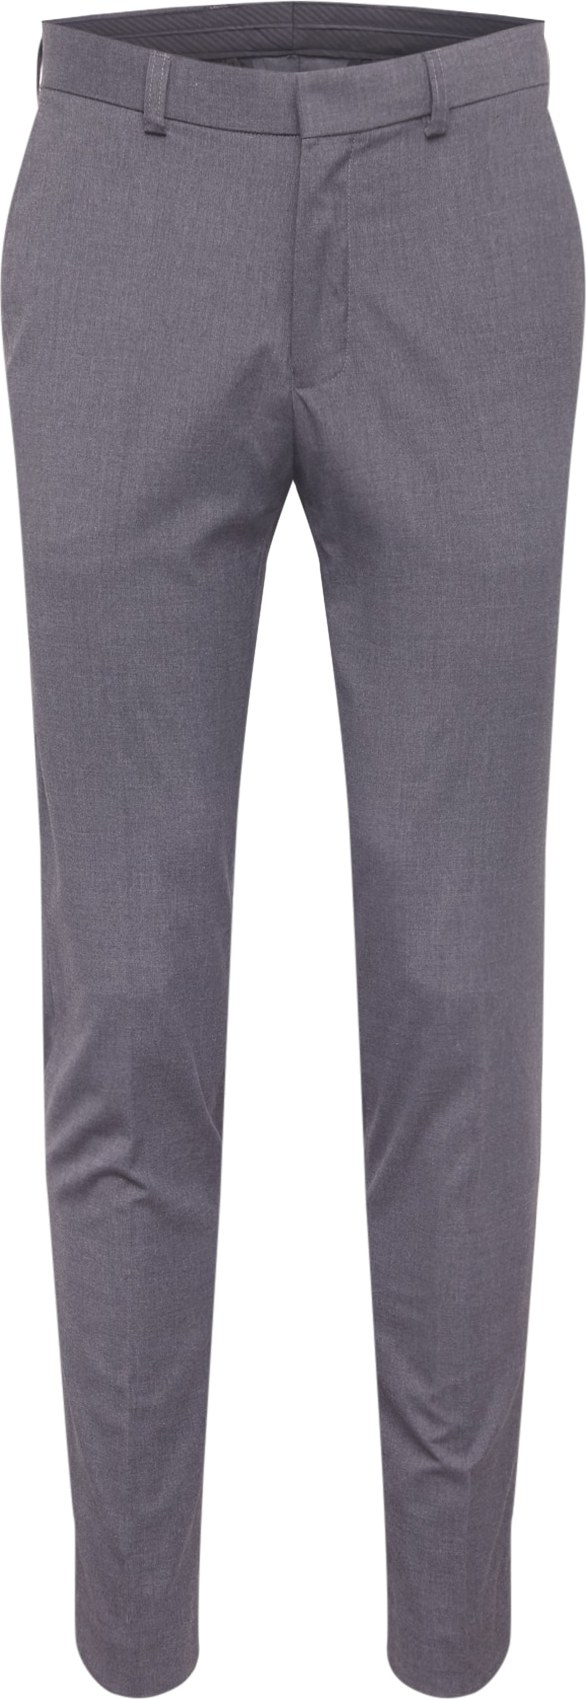 BURTON MENSWEAR LONDON Kalhoty s puky šedý melír